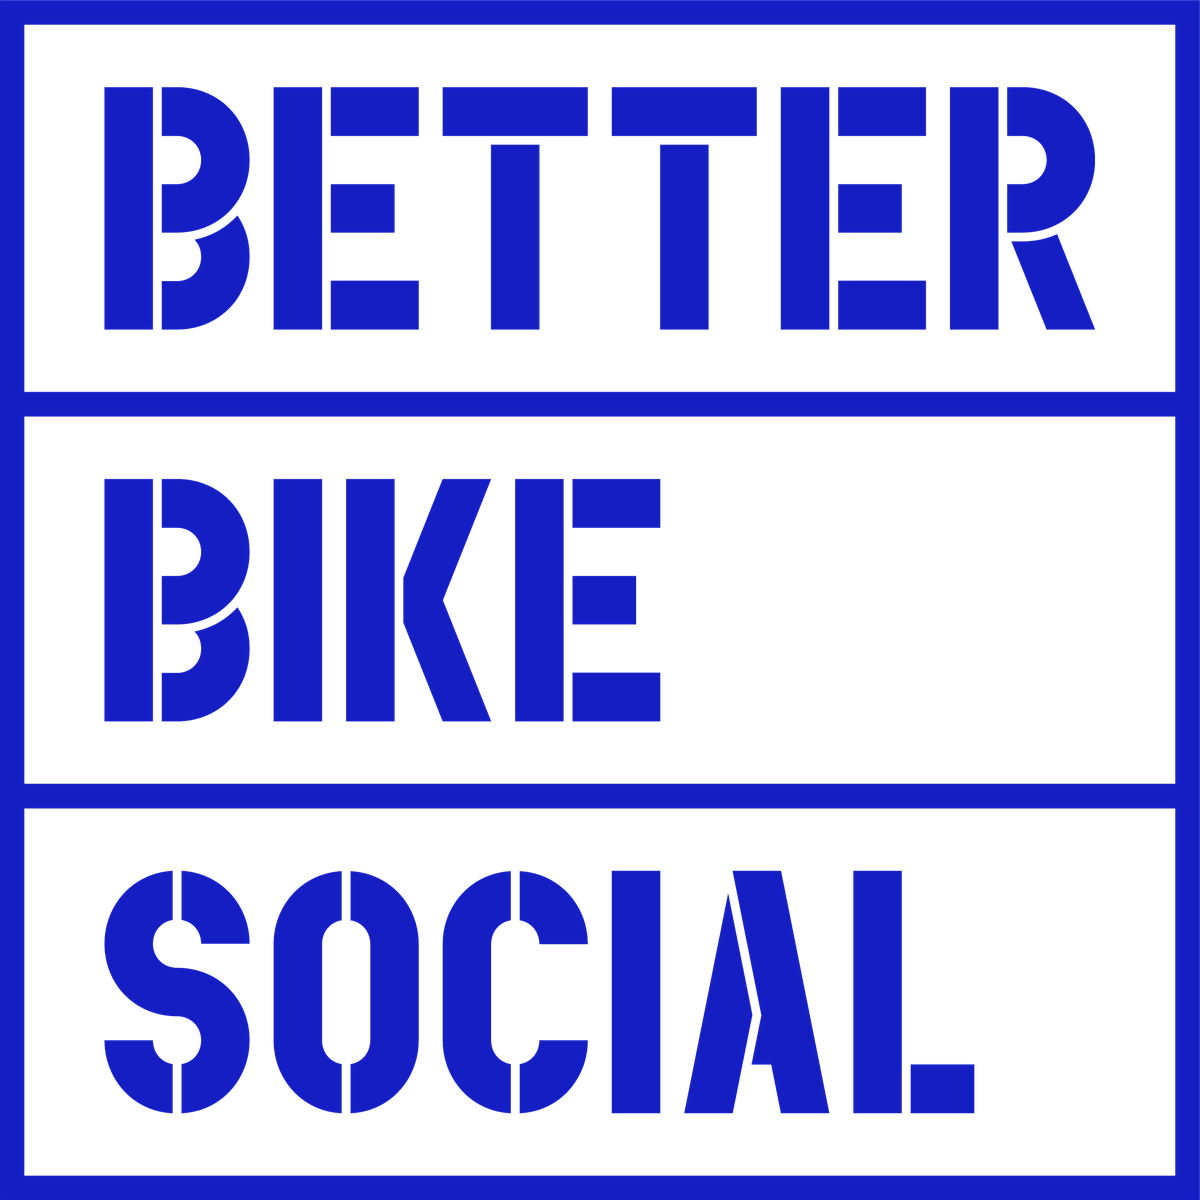 Better Bike Social: Brighton - Thursday Session